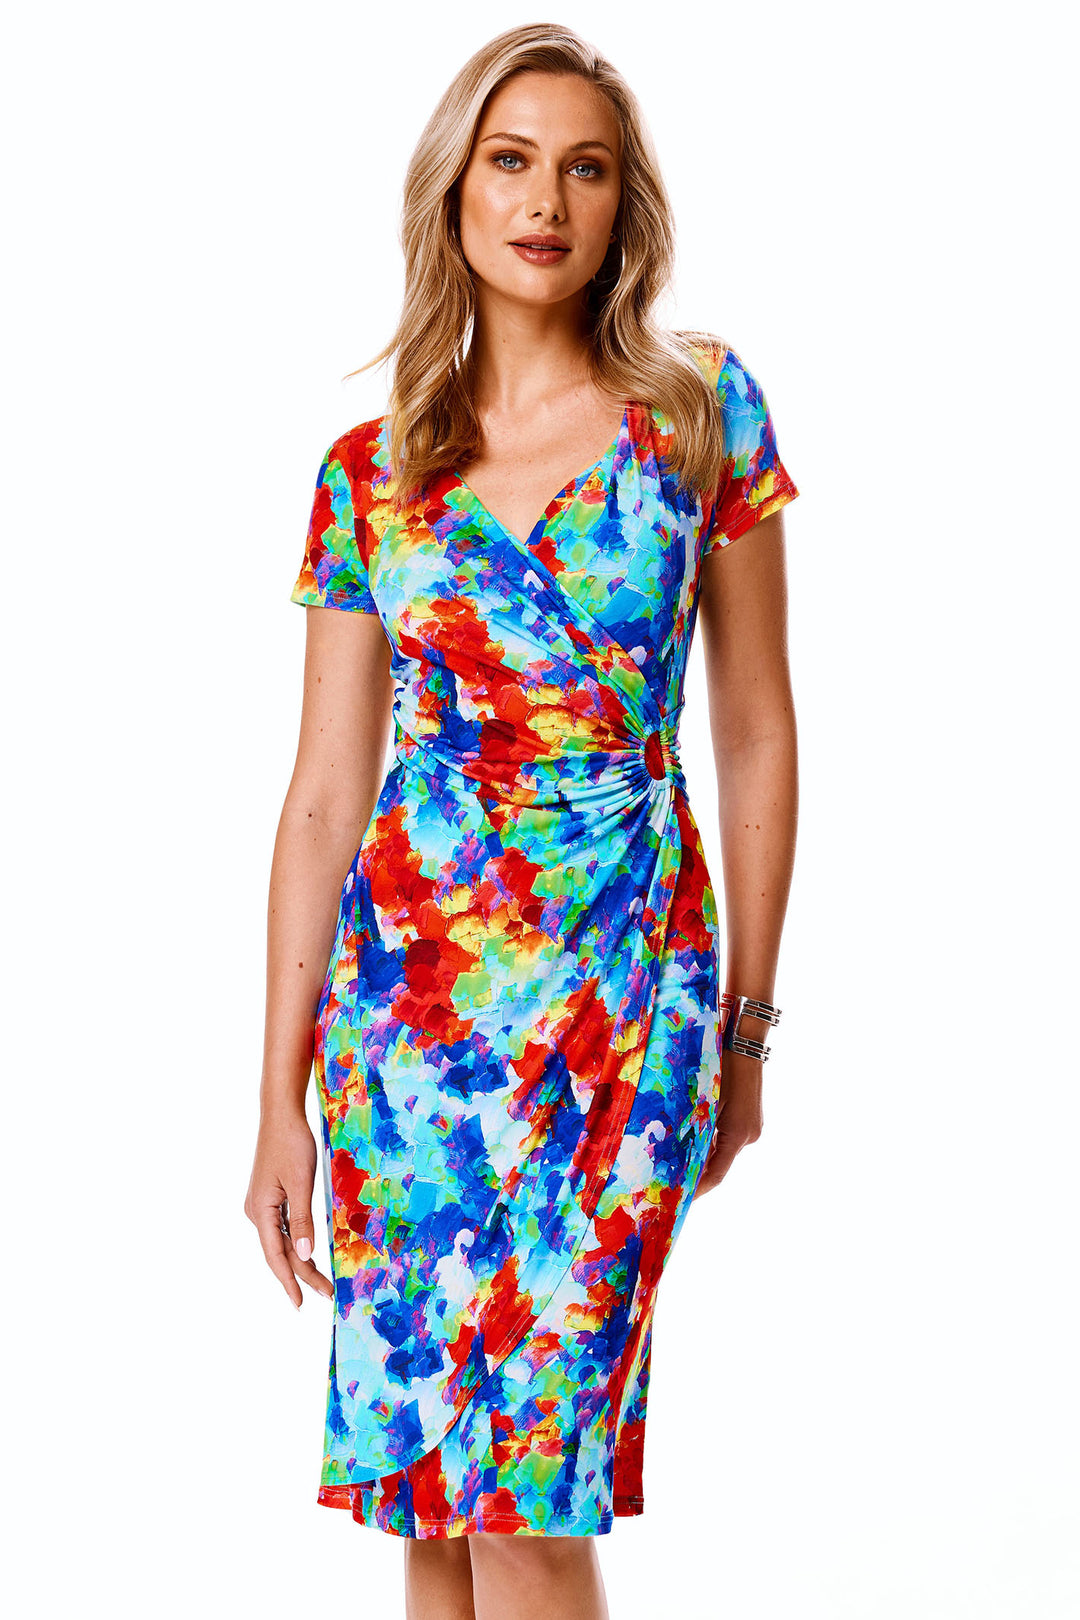 Tia London 78774 65 Blue Floral Print Wrap Style Dress - Experience Boutique